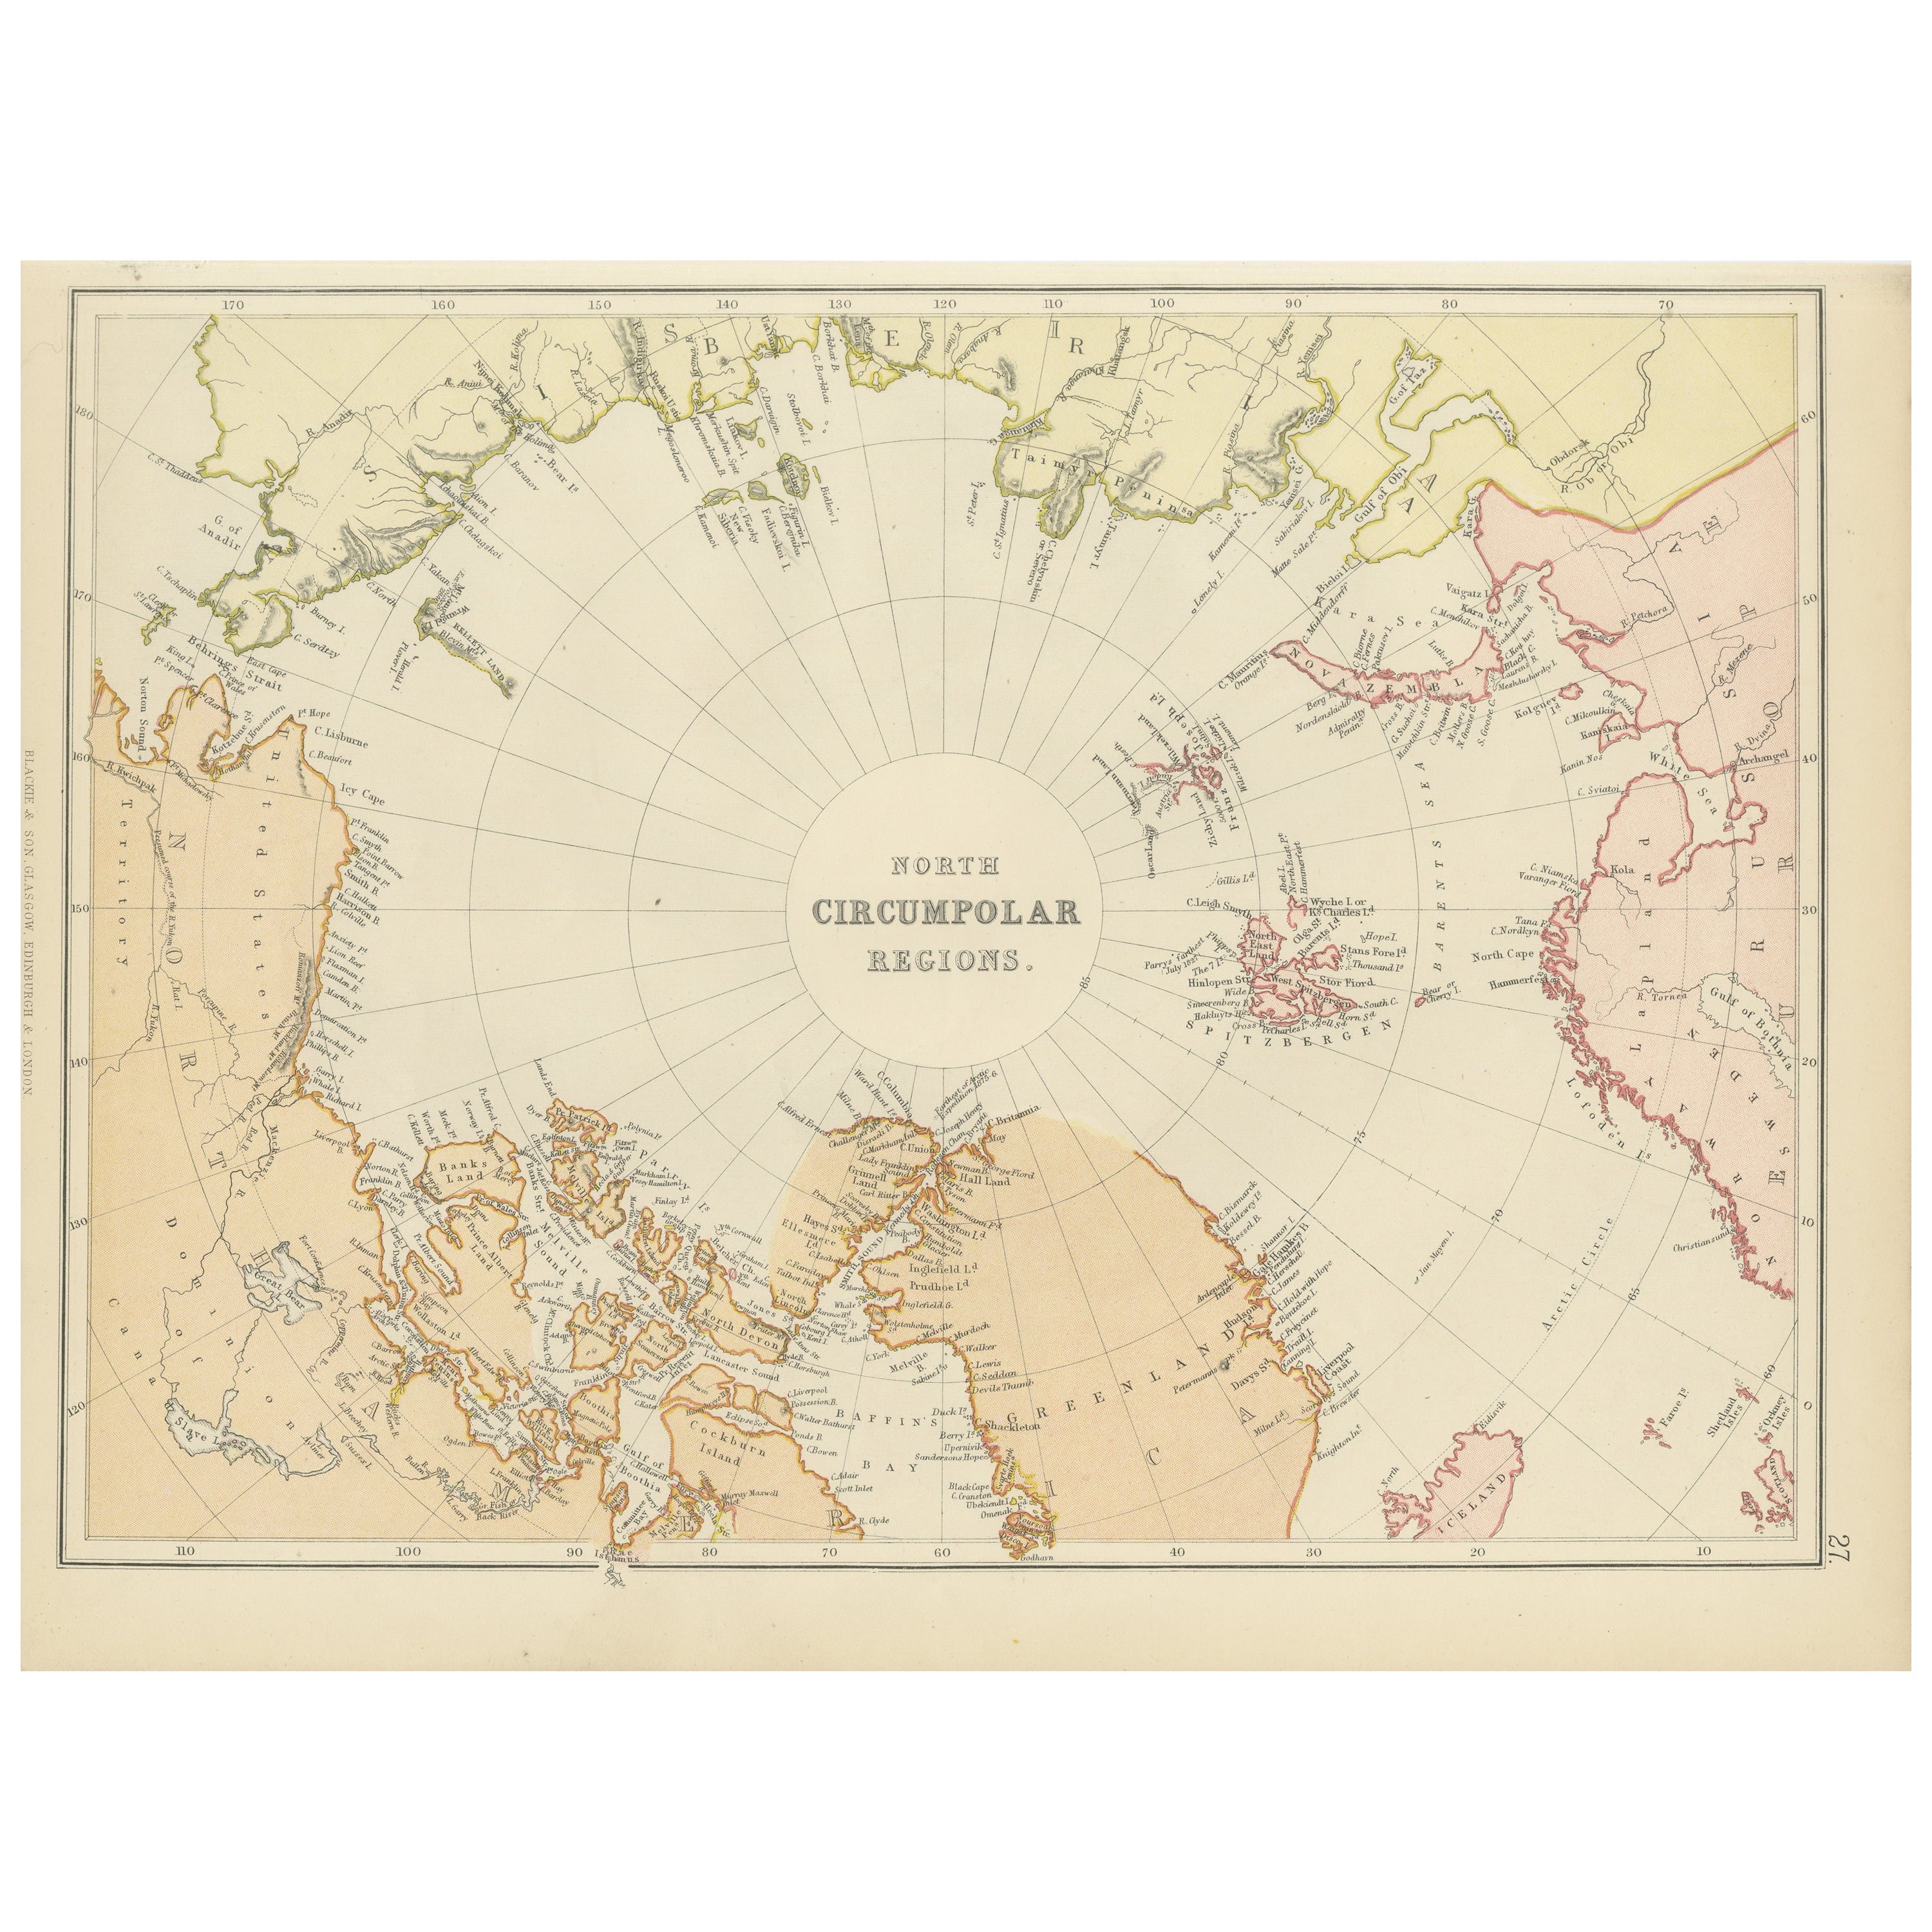 Arctic Exploration: An Original Map of the North Circumpolar Regions, 1882